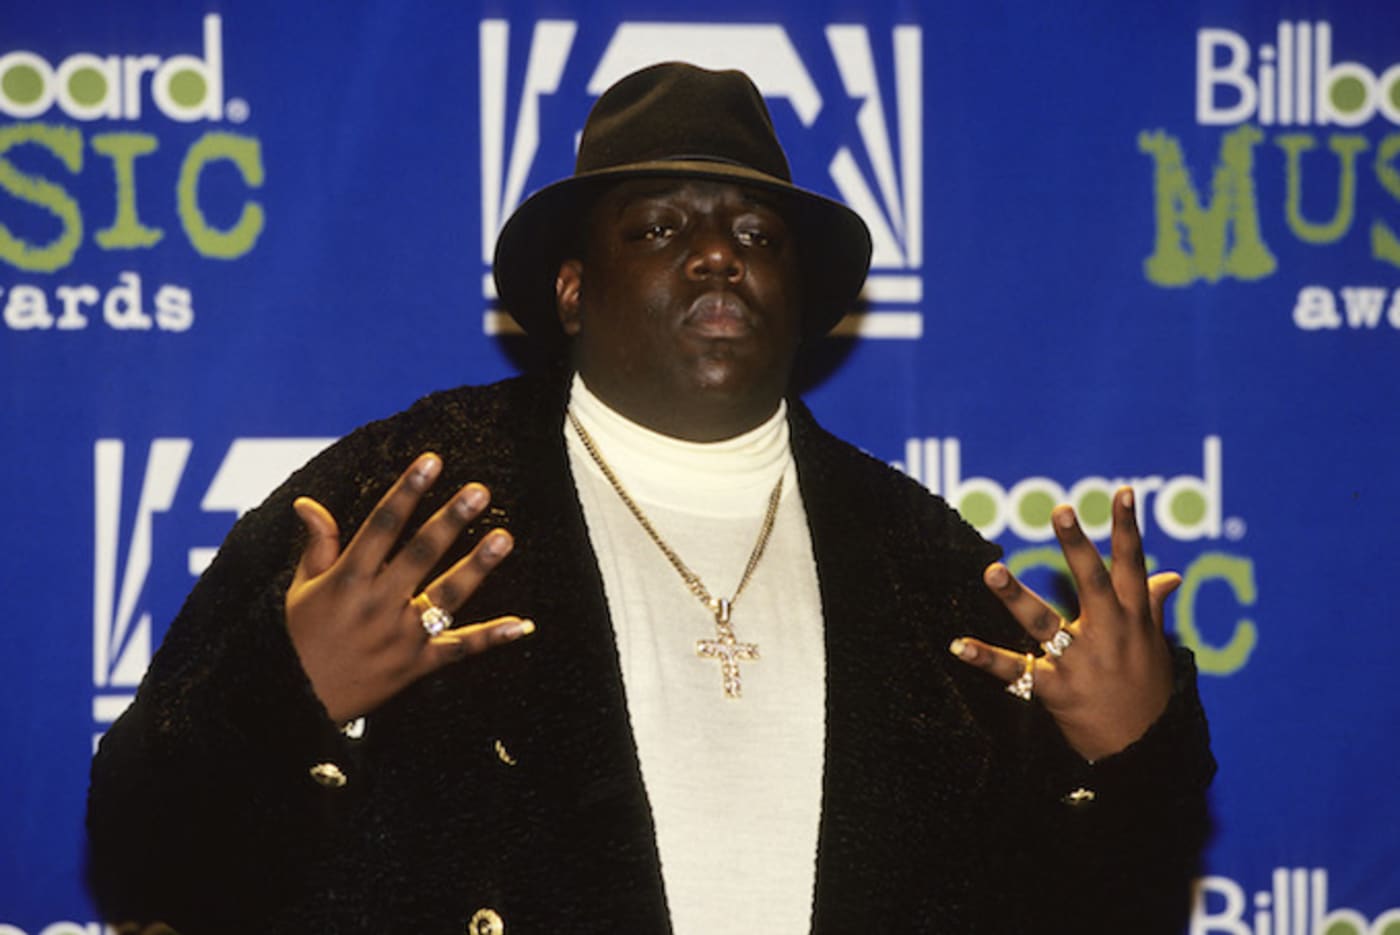 Notorious B.I.G. at the 1995 Billboard Awards